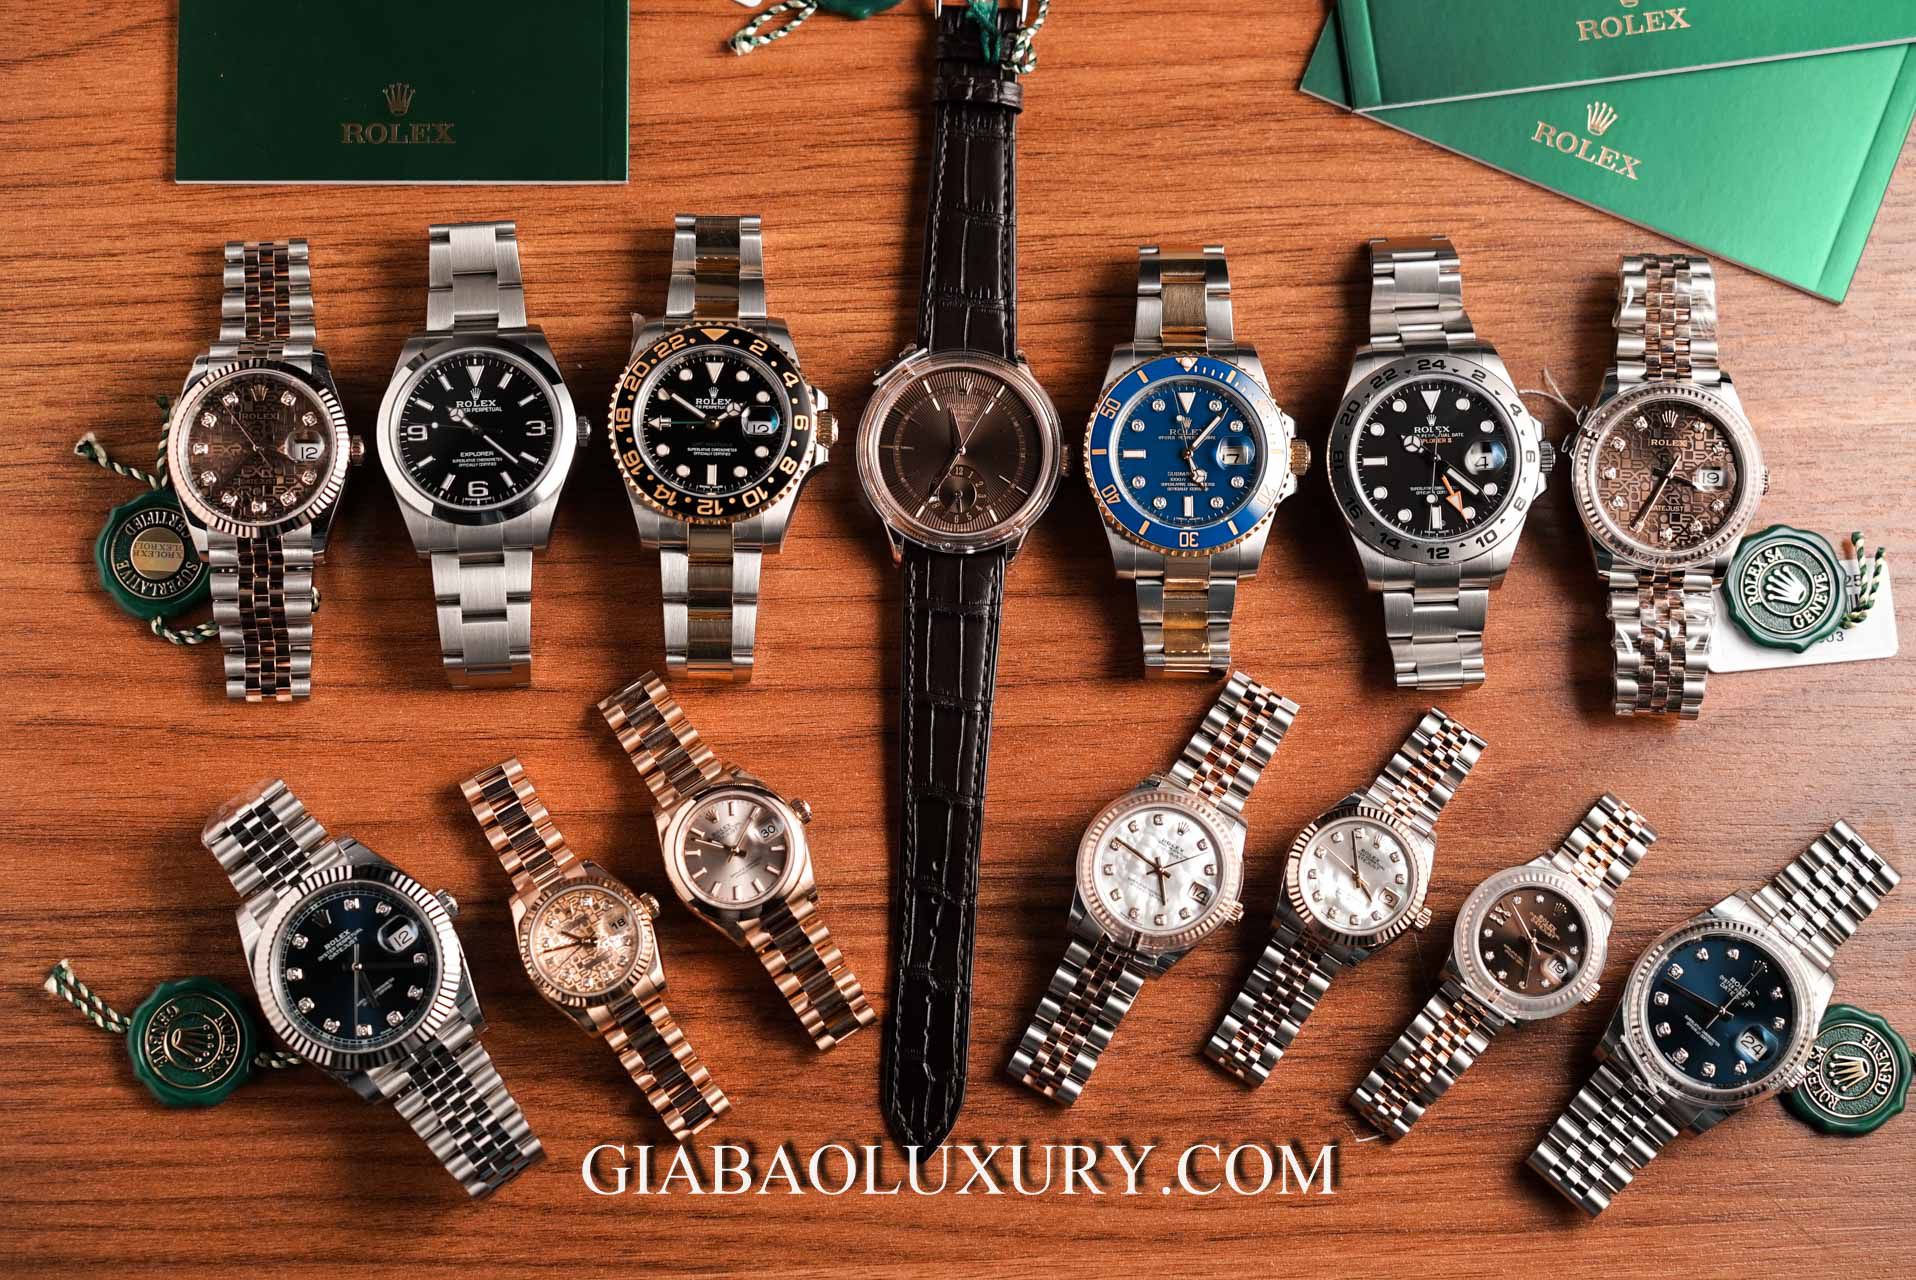 Mua bán đồng hồ cũ – hoạt động kinh doanh giàu tiềm năng